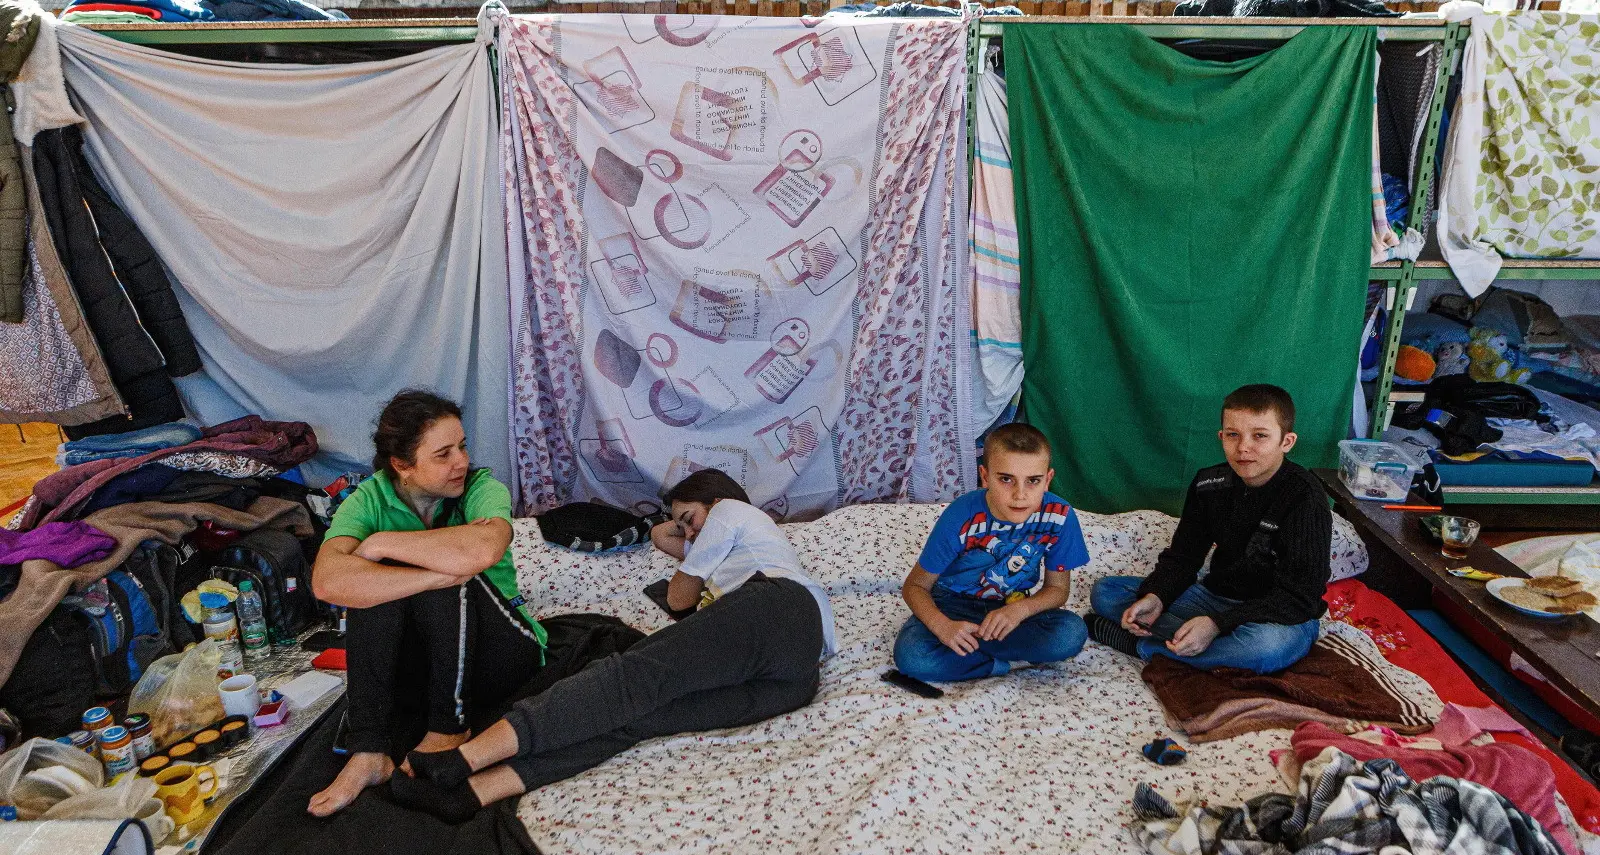 Rifugiati: rafforzare strategie comuni per accoglienza